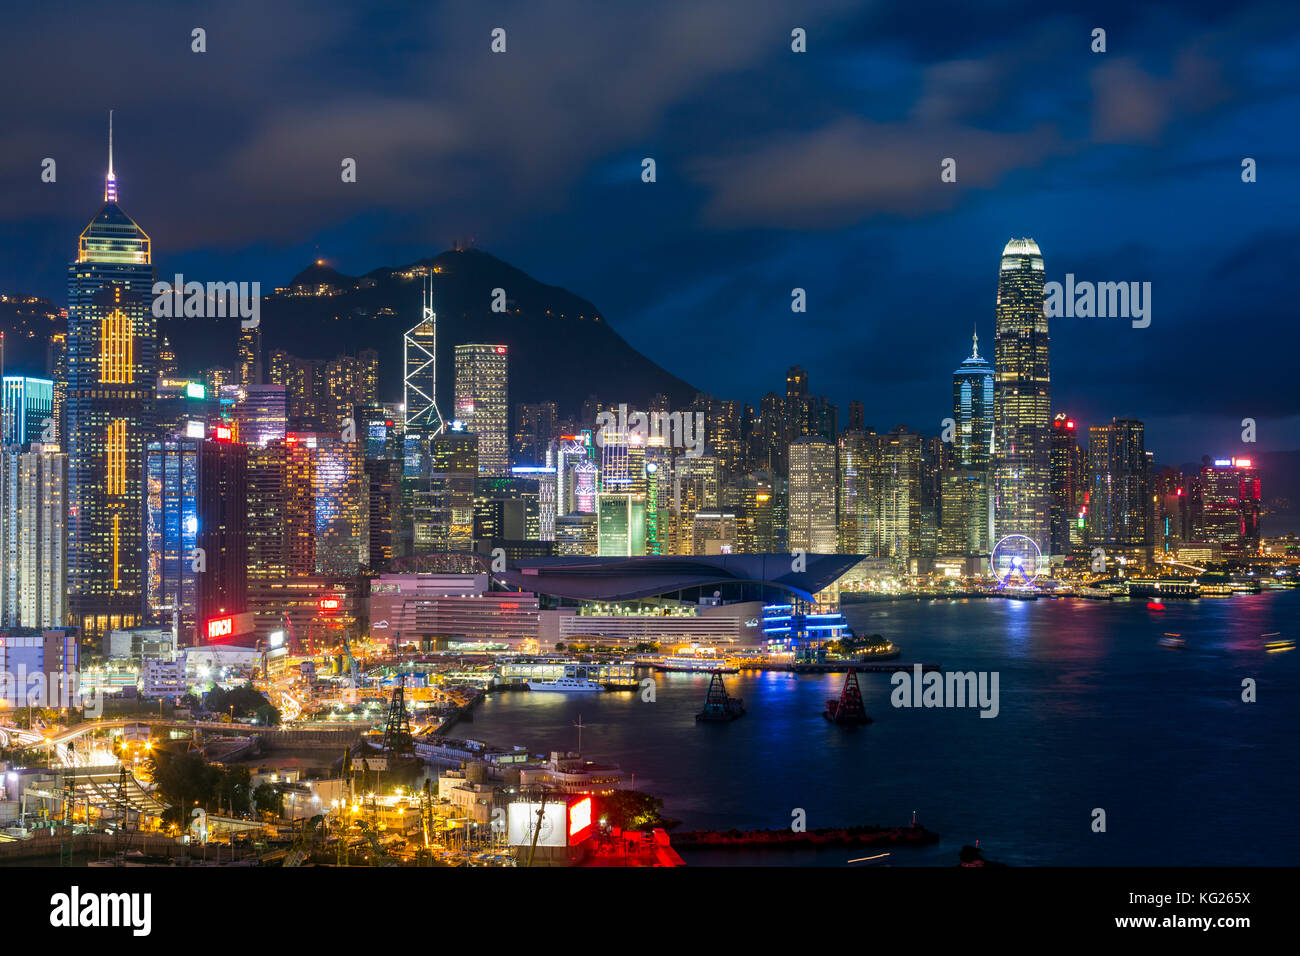 Vue surélevée, port et quartier central de l'île de Hong Kong et Victoria Peak, Hong Kong, Chine, Asie Banque D'Images